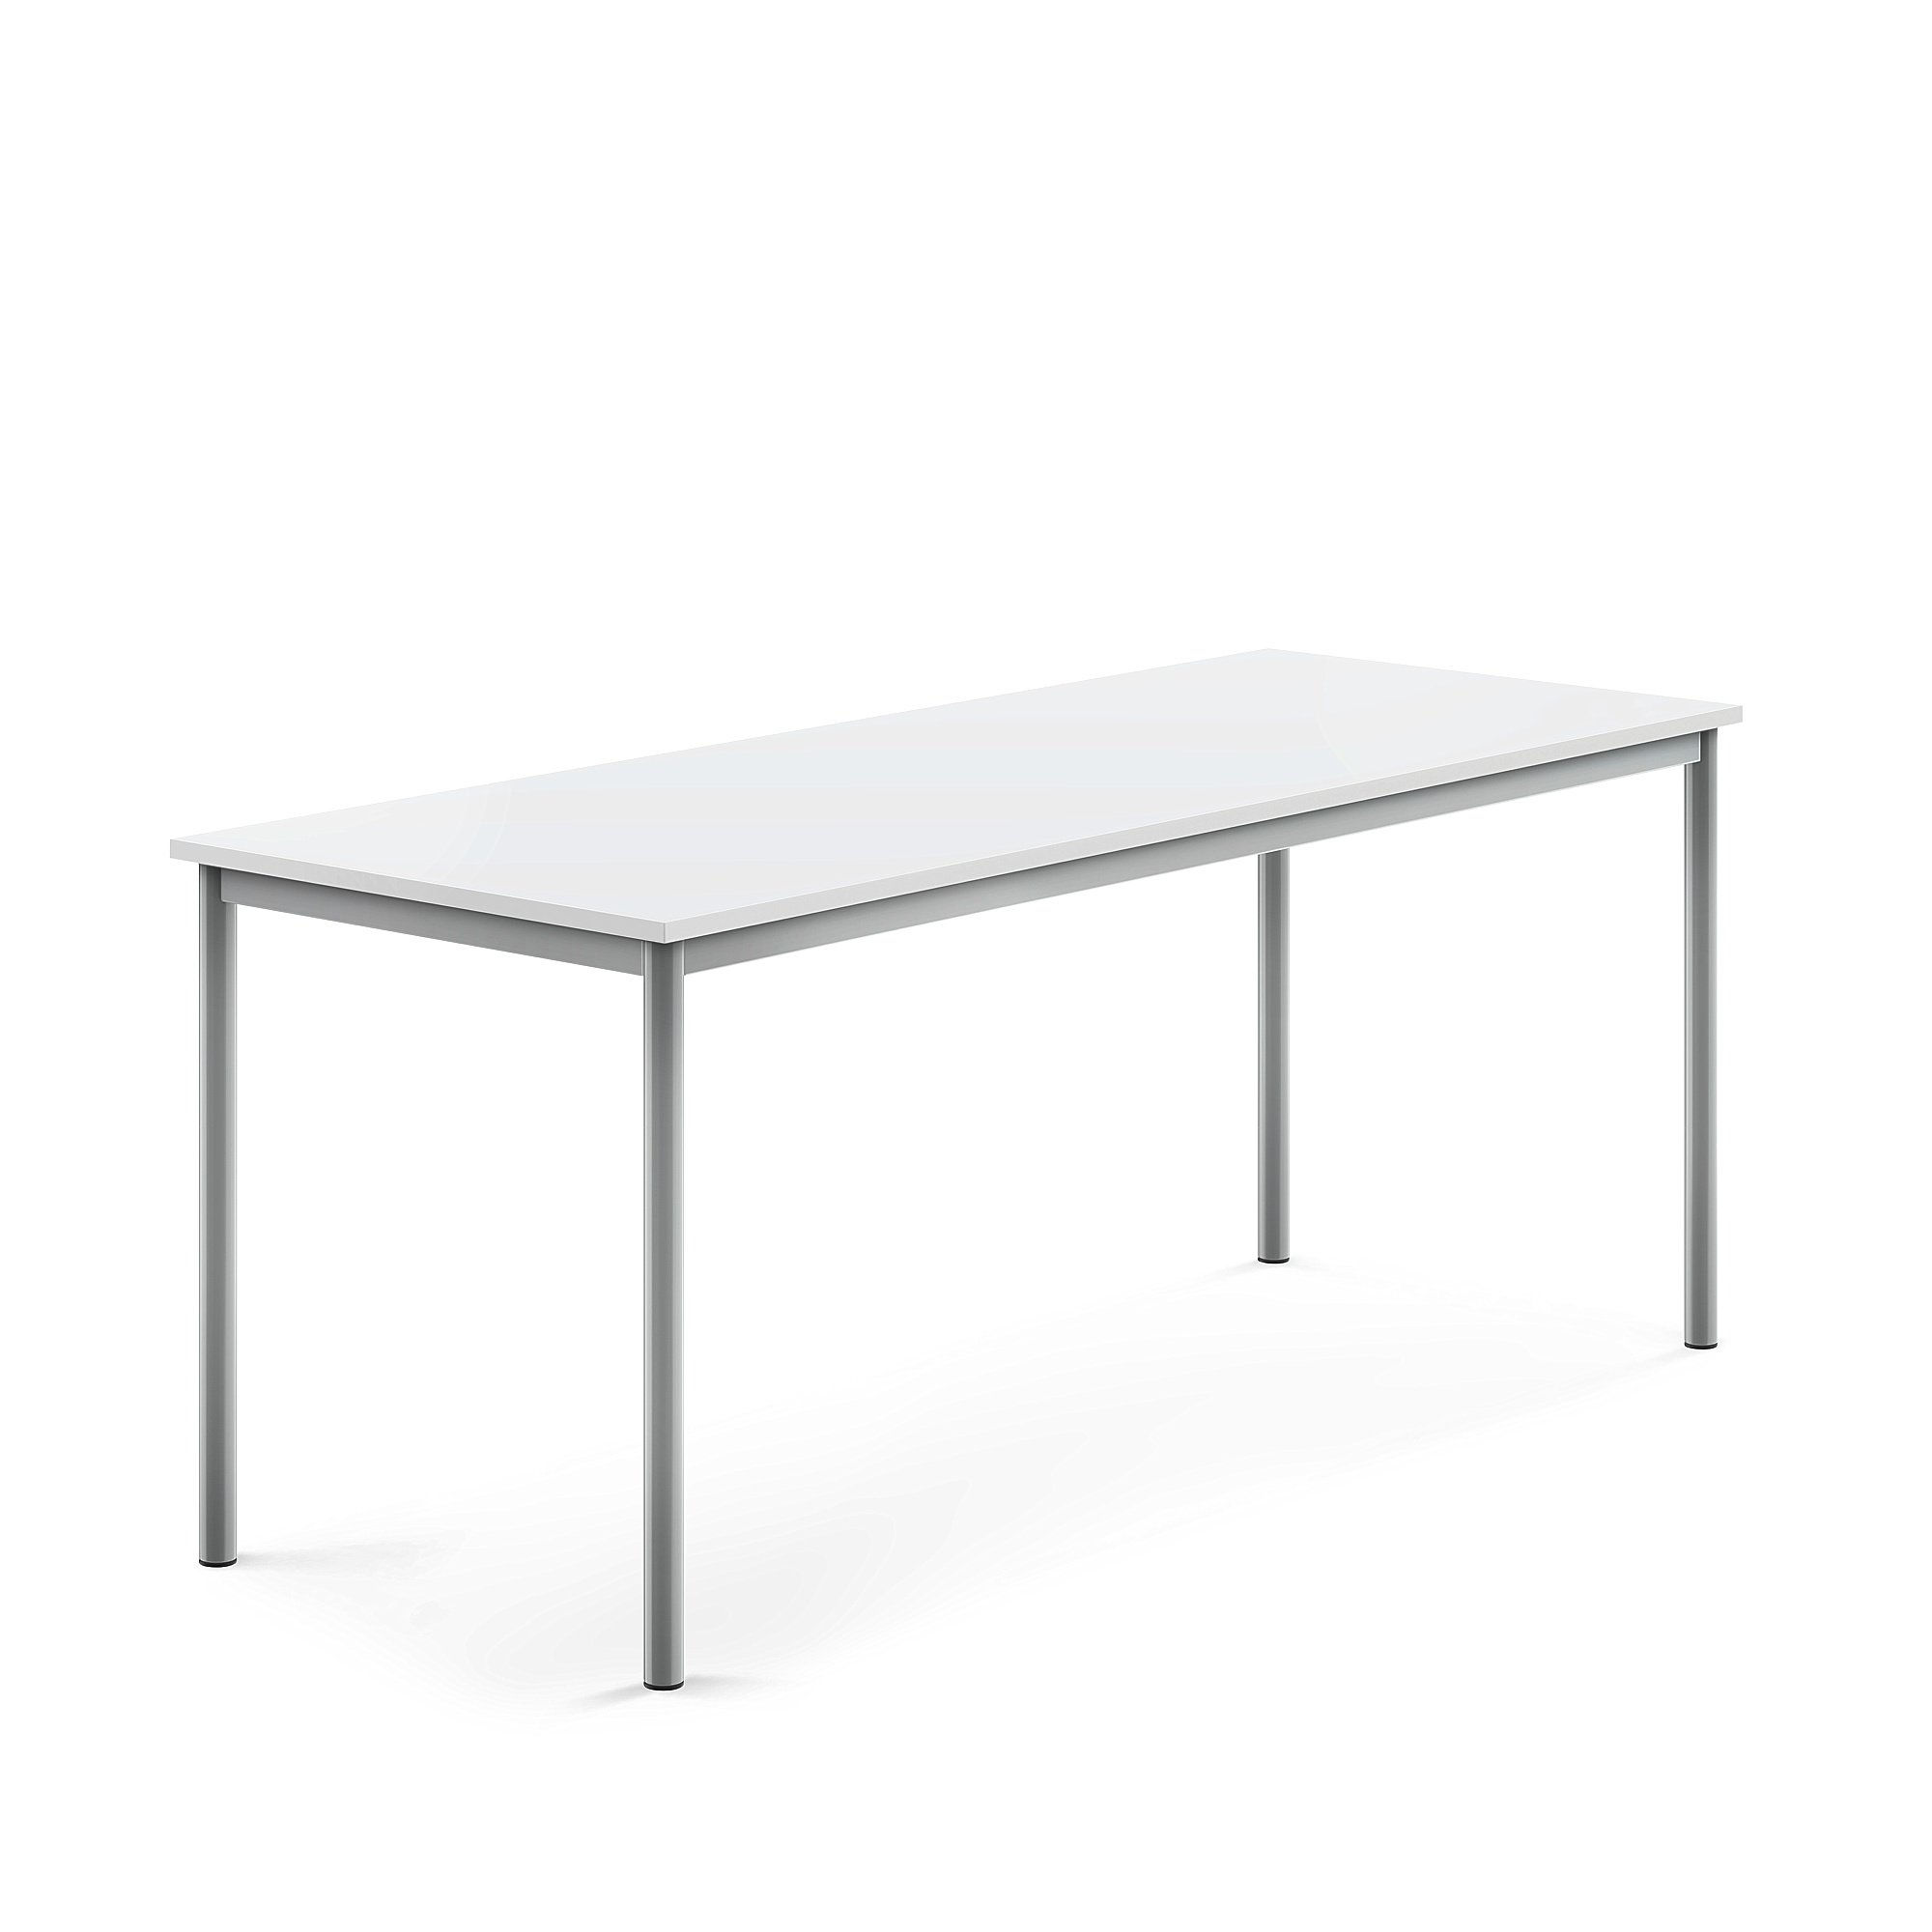 Stůl SONITUS, 1800x700x720 mm, stříbrné nohy, HPL deska tlumící hluk, bílá